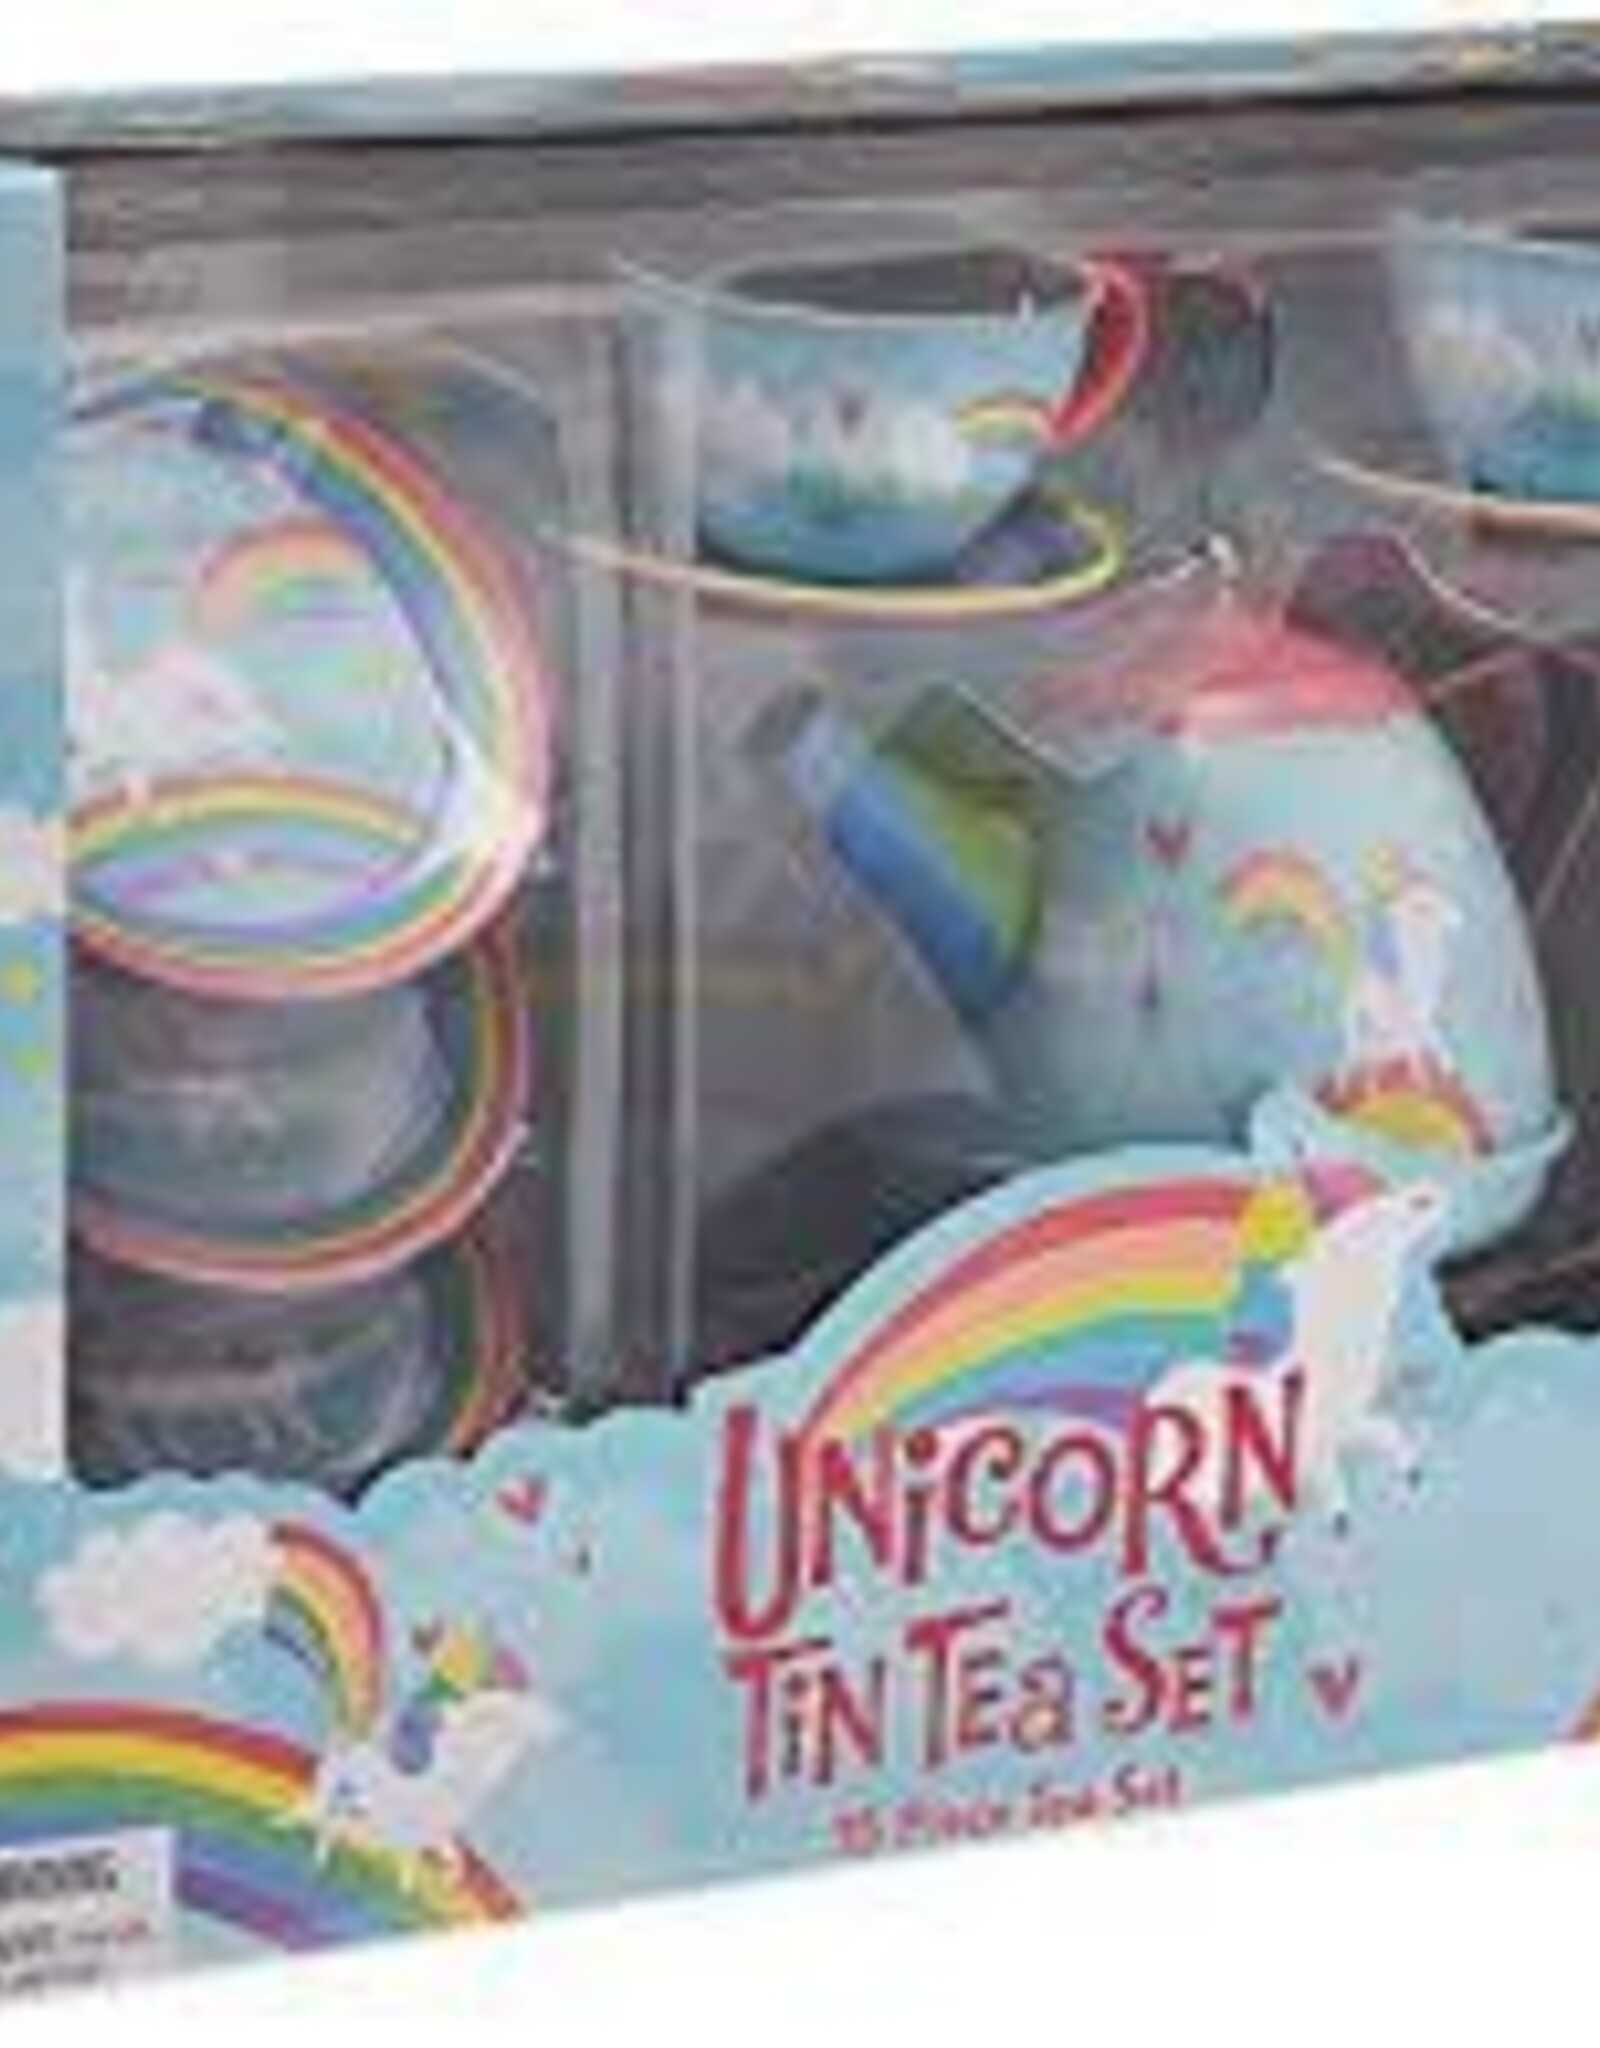 SCHYLLING Unicorn Tin tea set